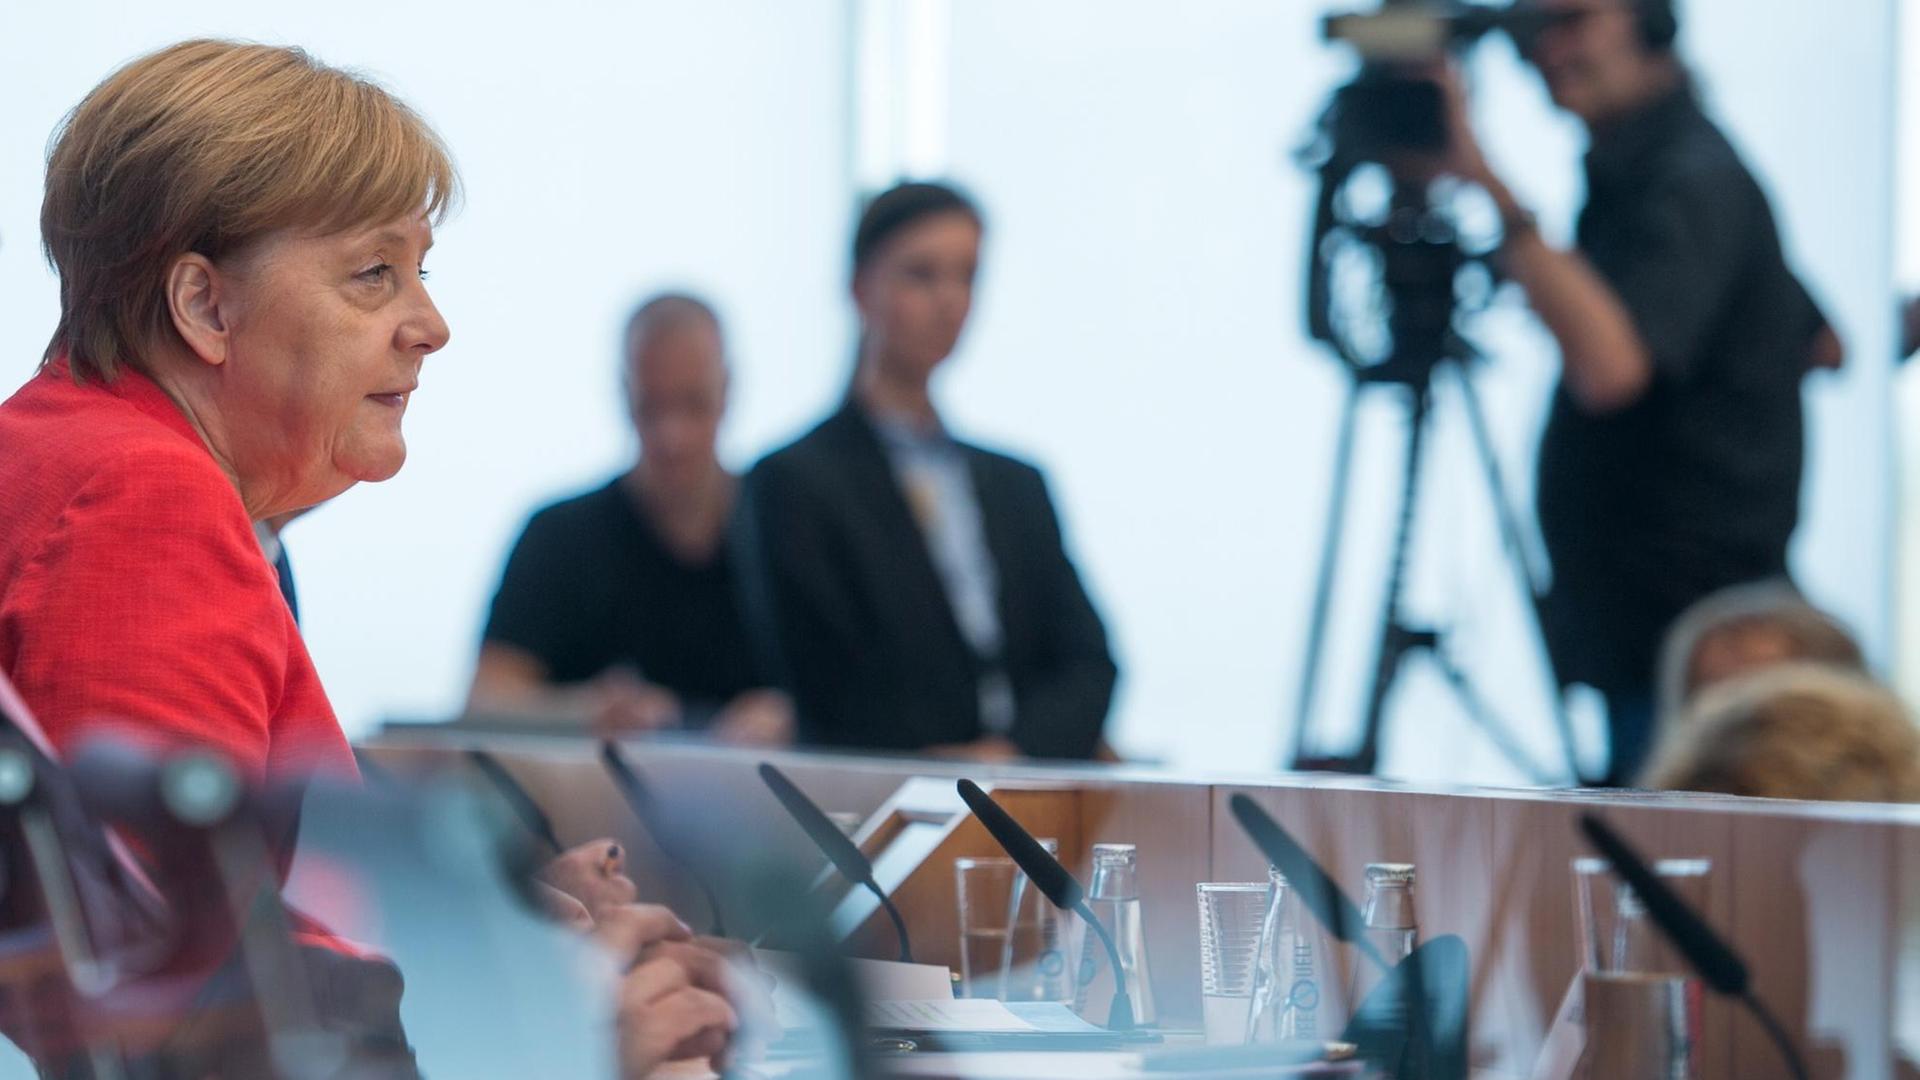 Bundeskanzlerin Angela Merkel (CDU) äußert sich bei der traditionellen Pressekonferenz vor der Sommerpause in der Bundespressekonferenz zu aktuellen Themen der Innen- und Außenpolitik.